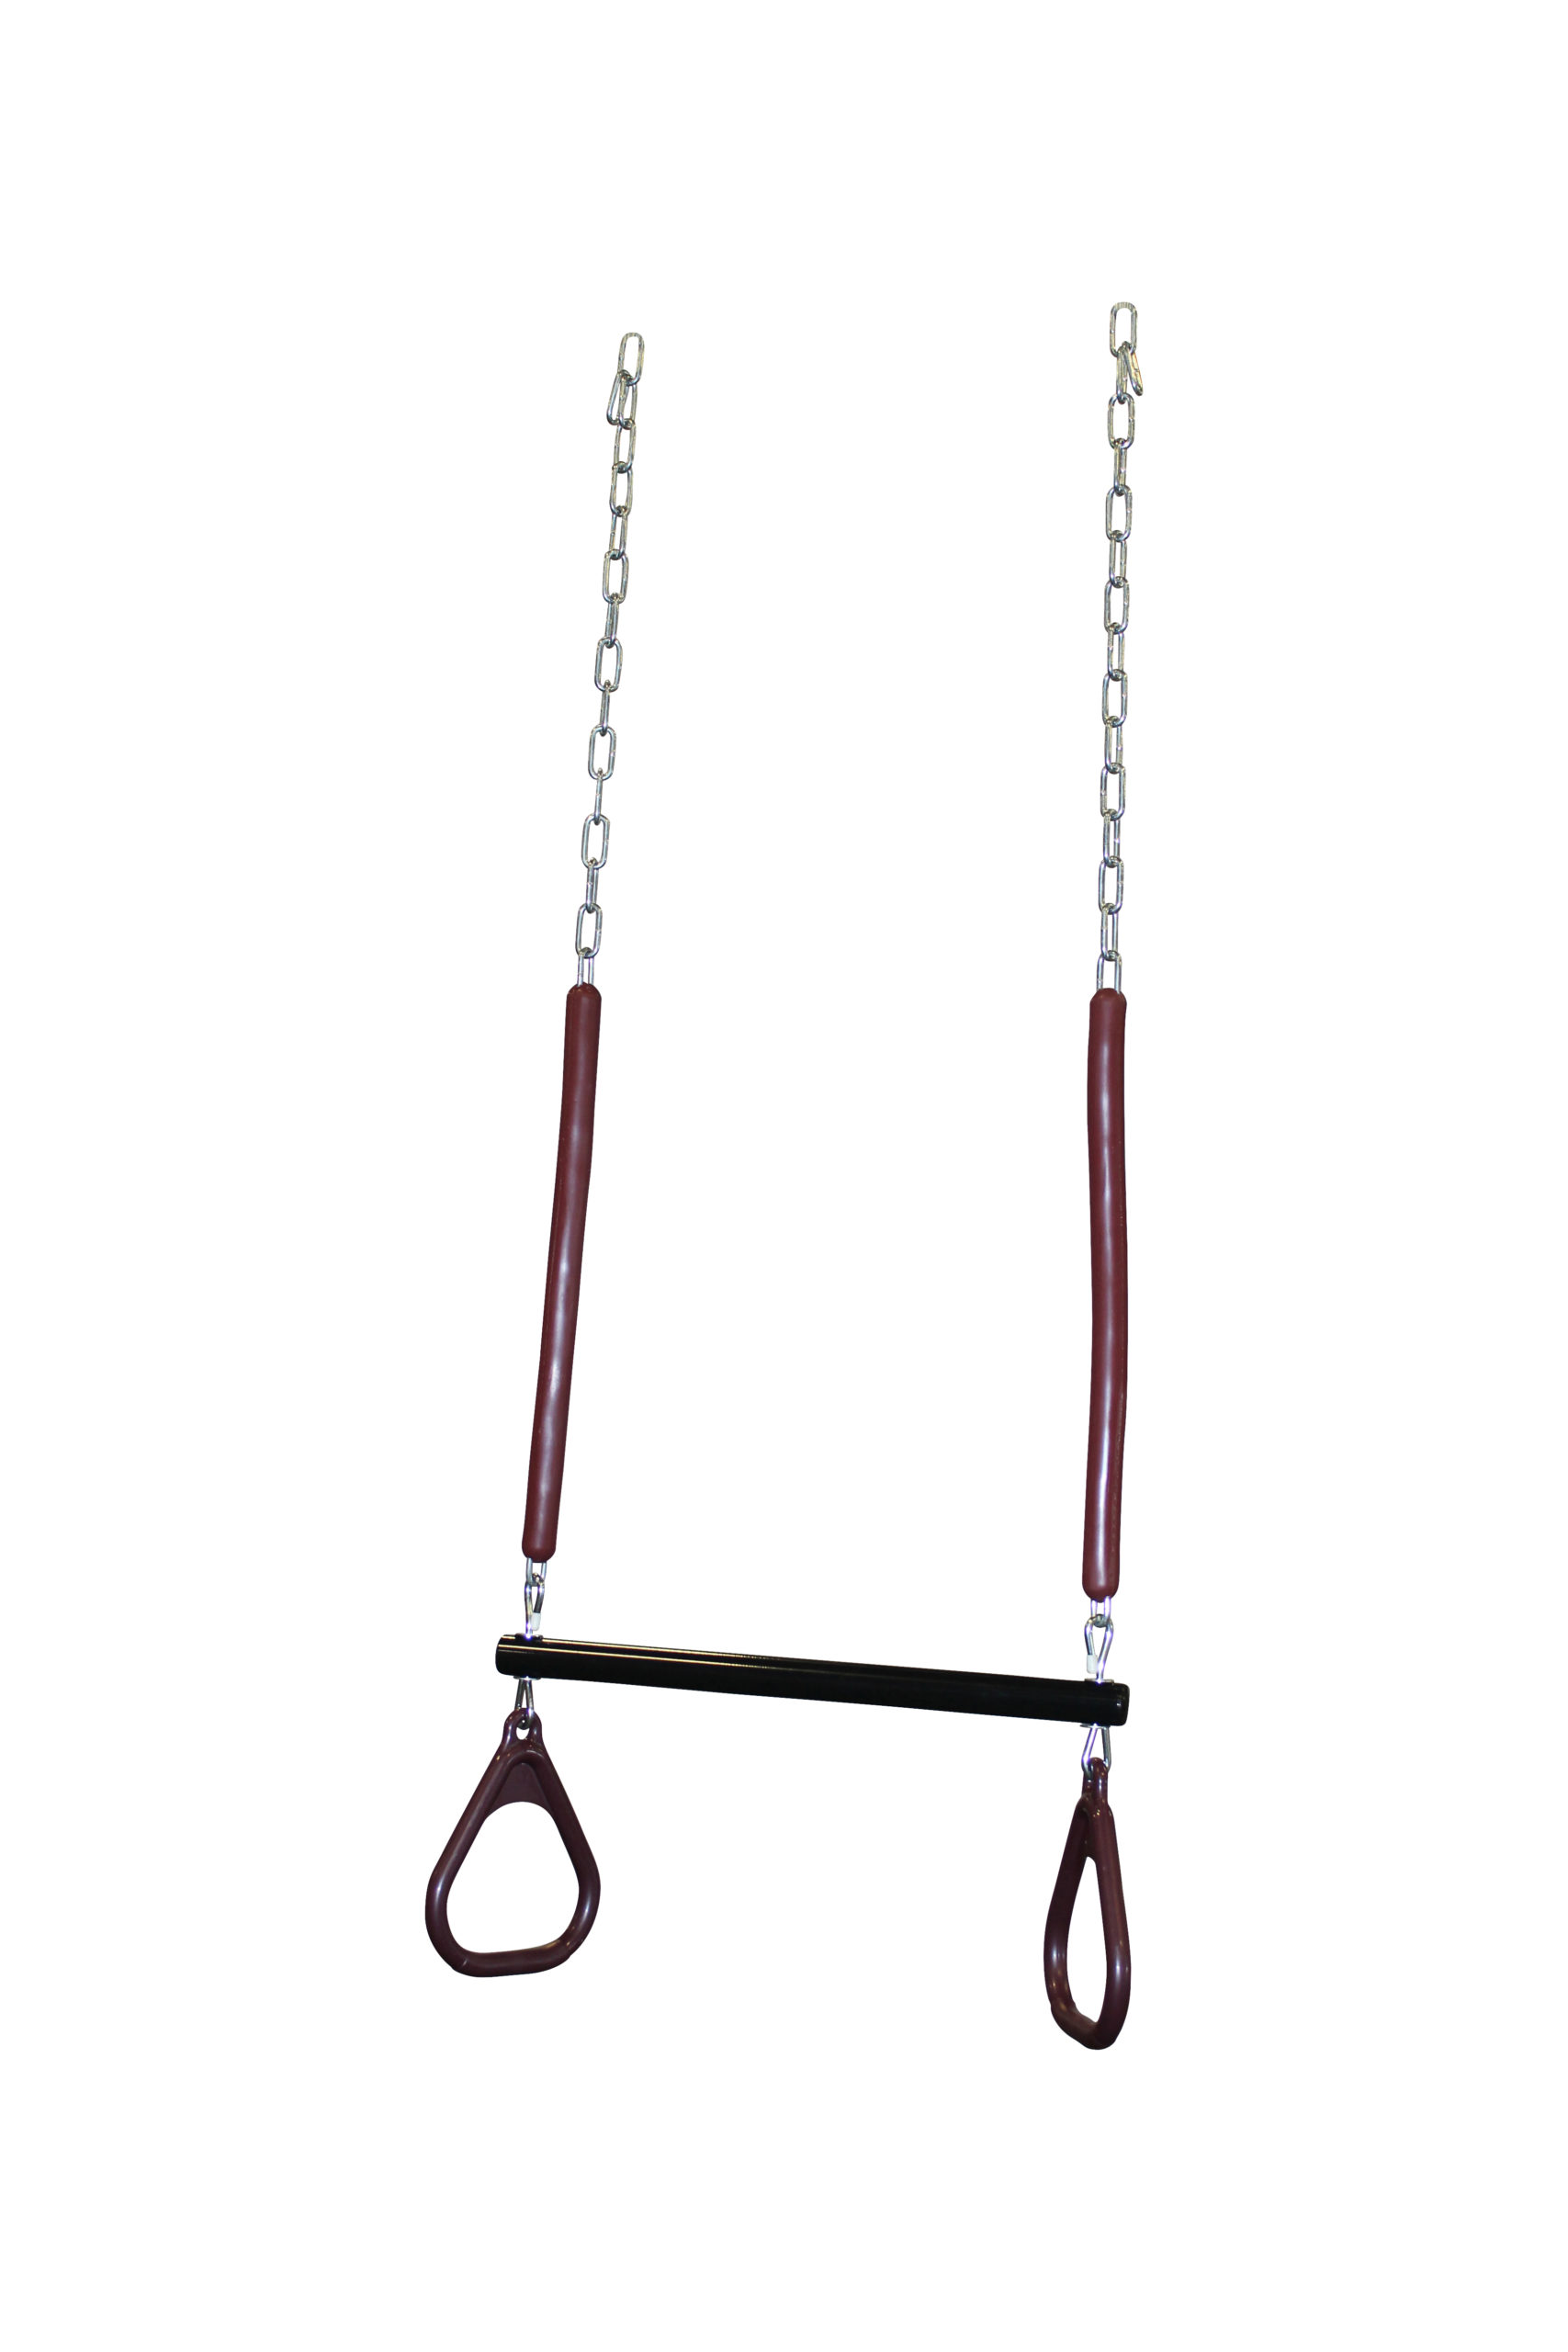 Trapeze Swing.